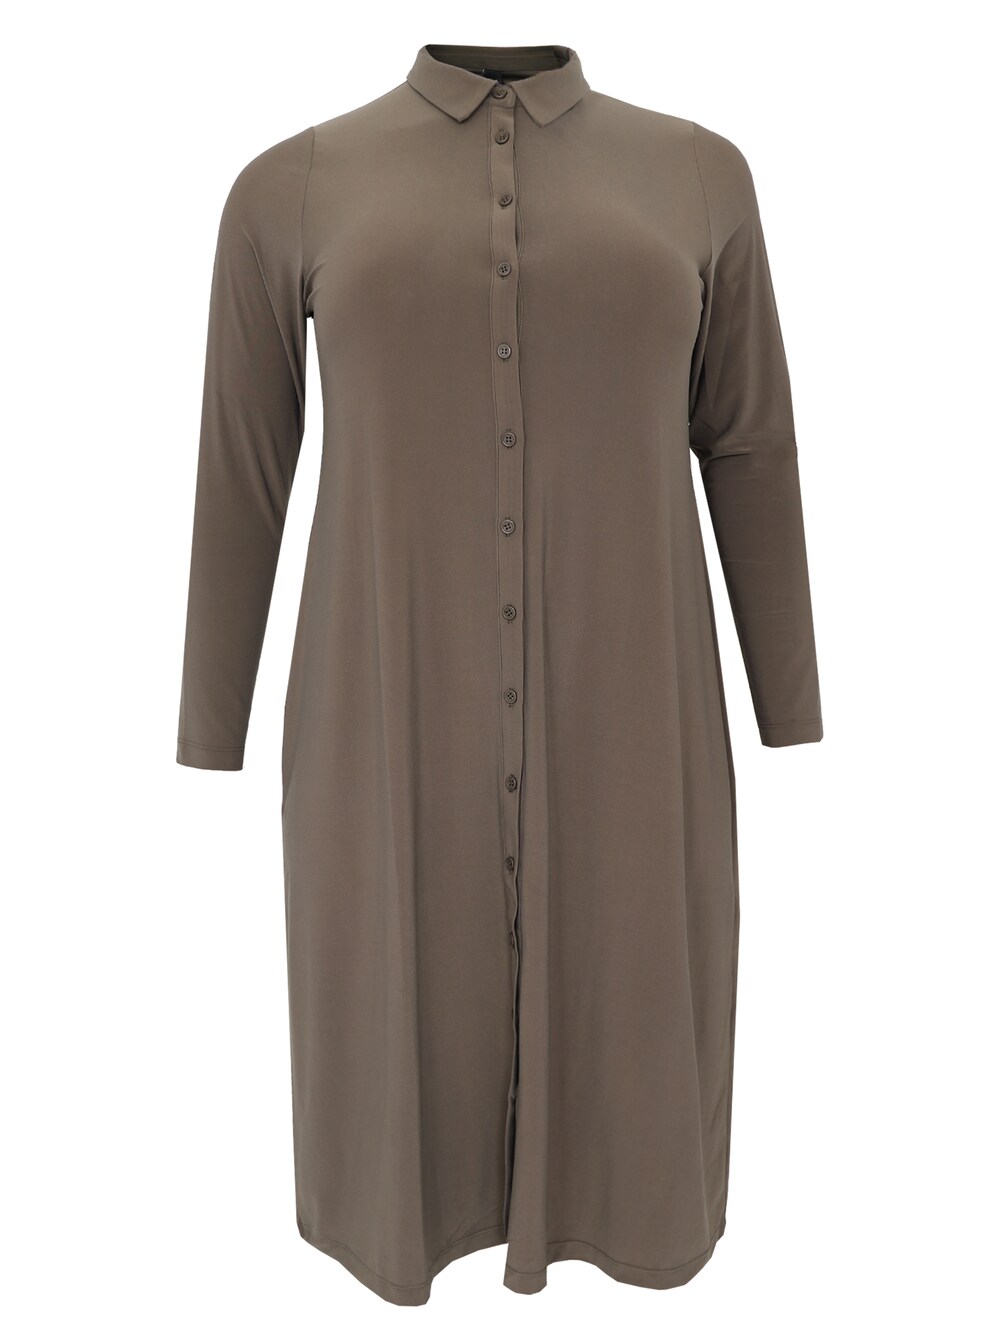 Рубашка-платье Yoek Dolce, коричневый рубашка yoek коричневый